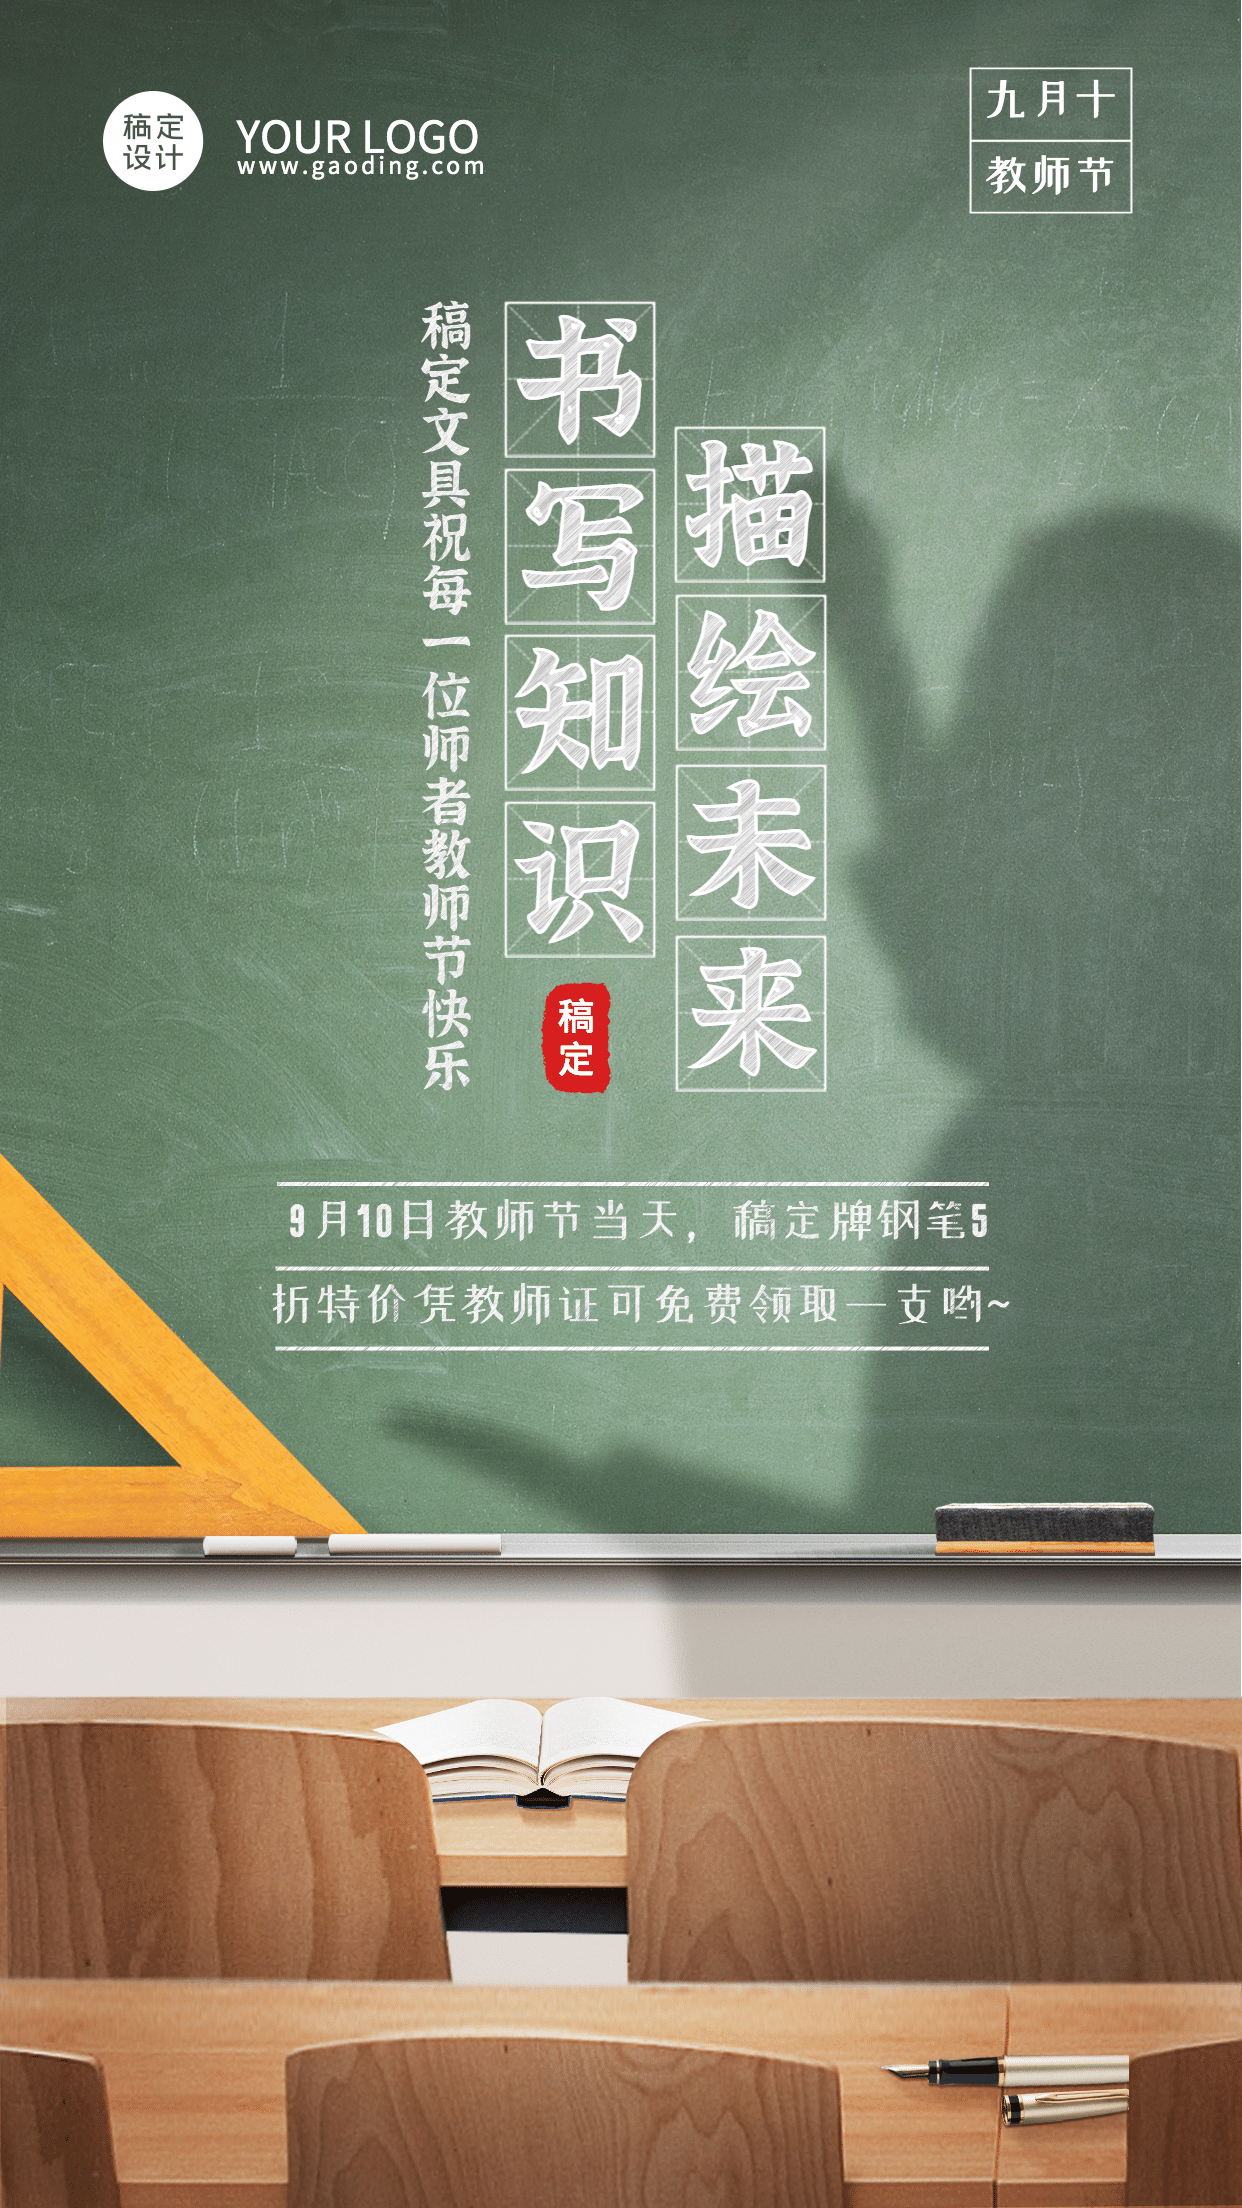 教师节活动促销通知实景手机海报